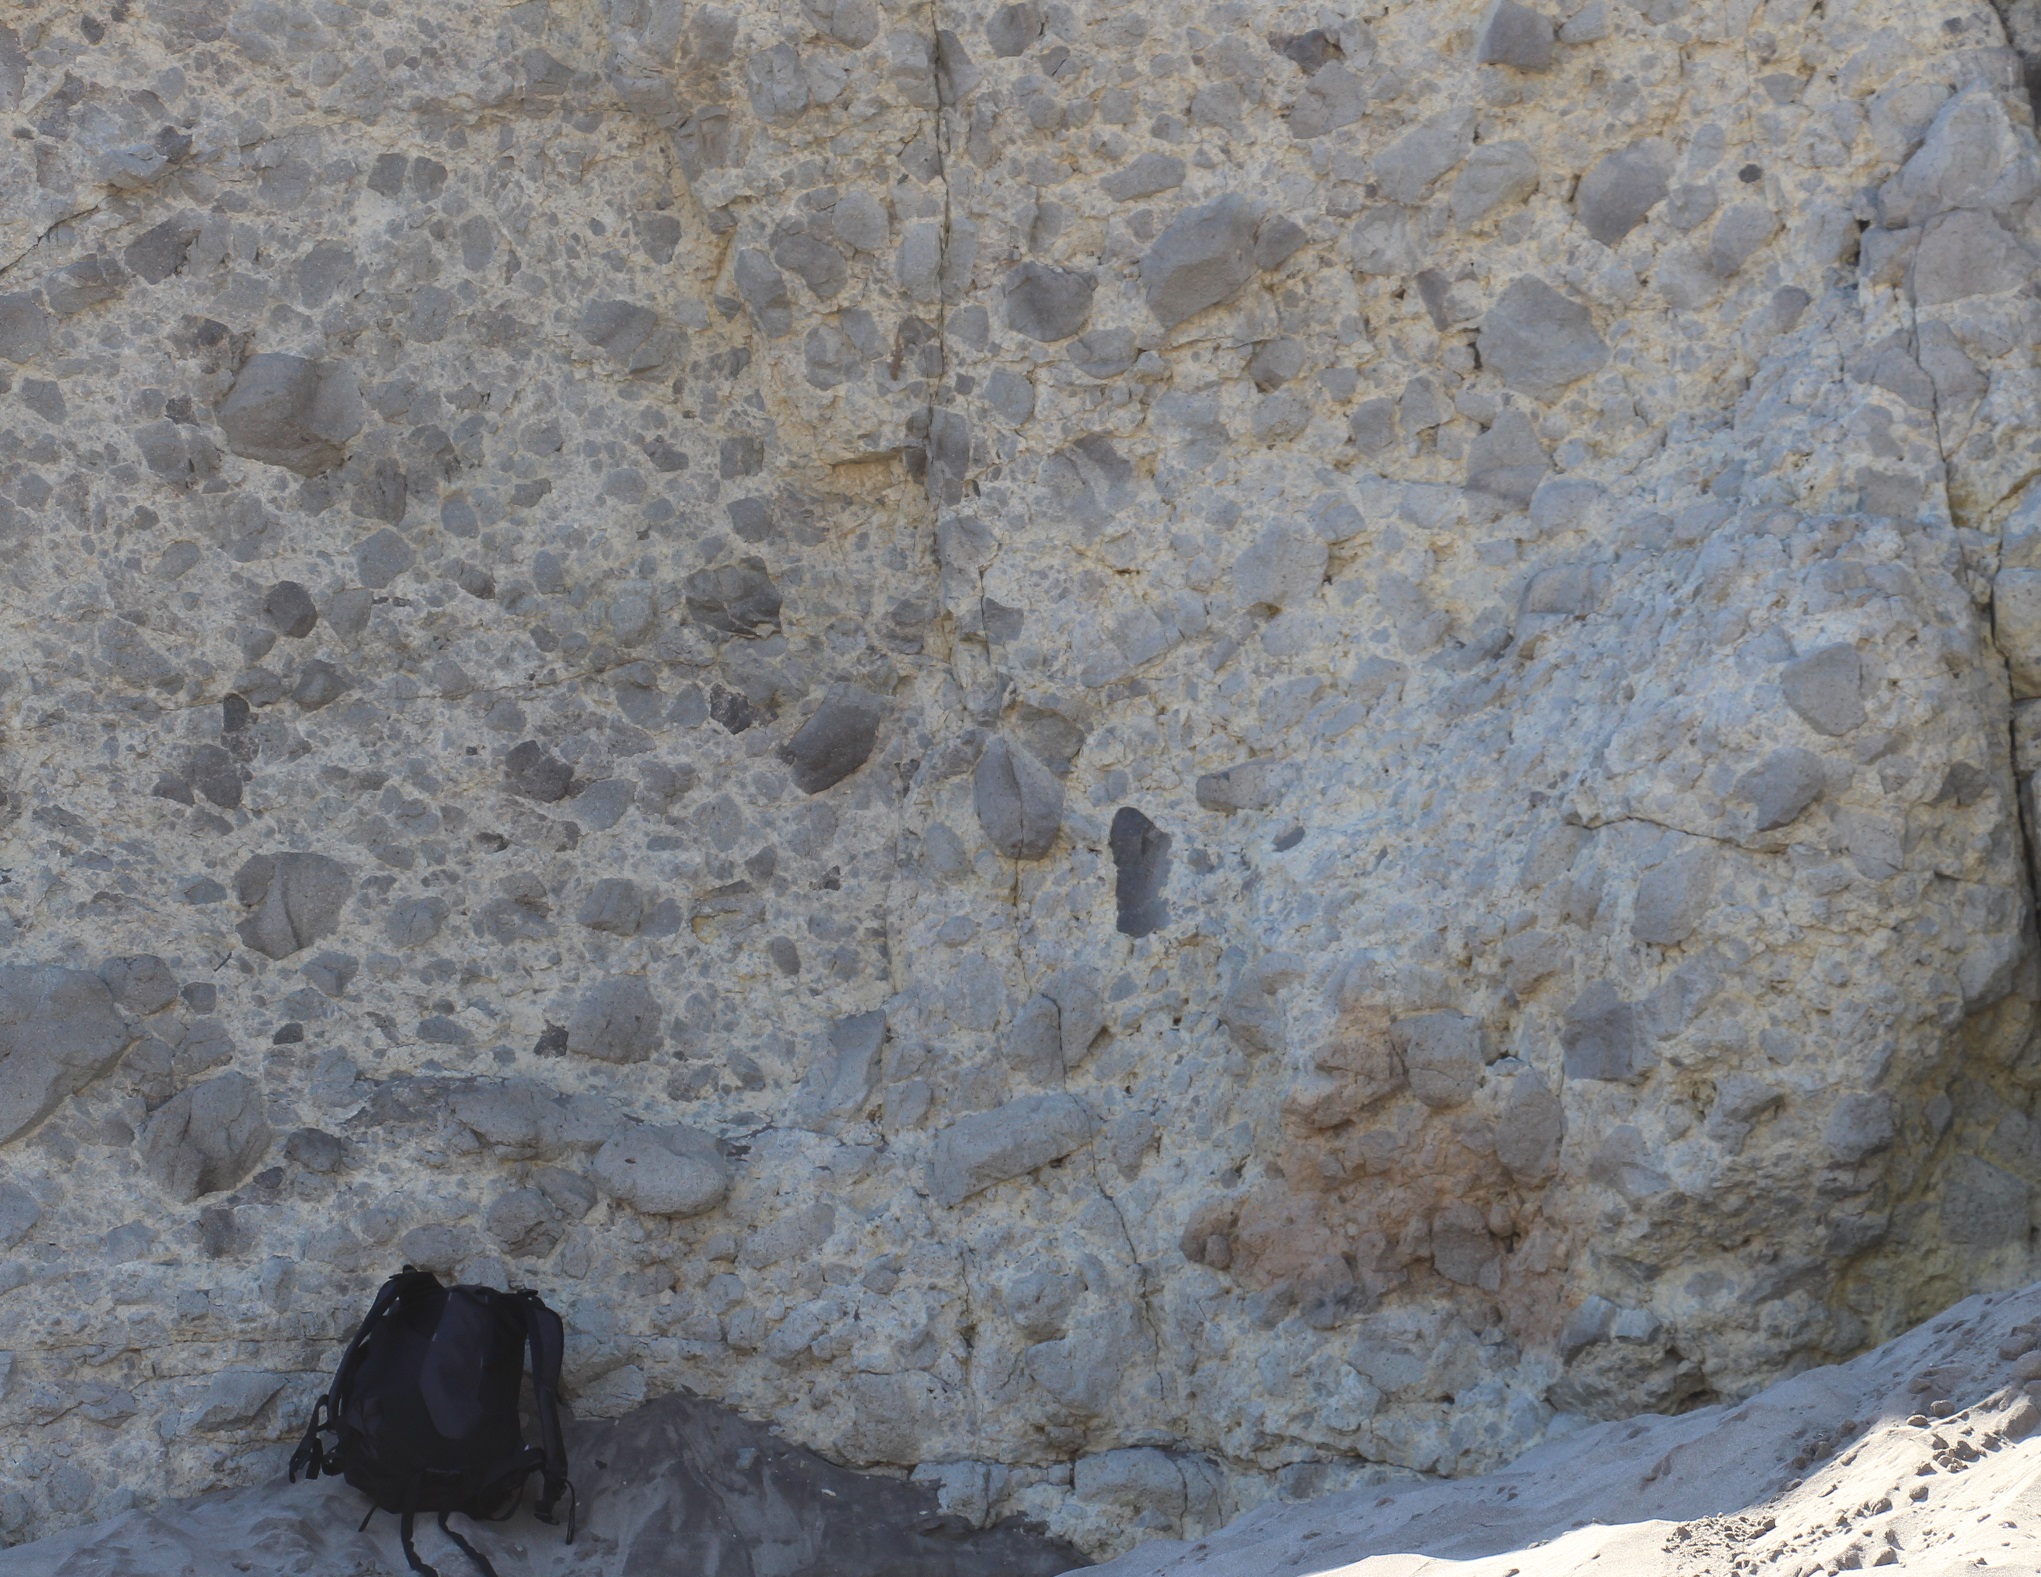 Aglomerado Volcánico. Fragmentos de roca volcánica de carácter andesítico, con tamaños entre 1 y 60 cm, incluidos homogéneamente en una masa fina de fondo (tamaño ceniza) de color más claro. Playa de Mónsul. Parque Natural de Cabo de Gata – Níjar (Almería). Fotografía de campo.